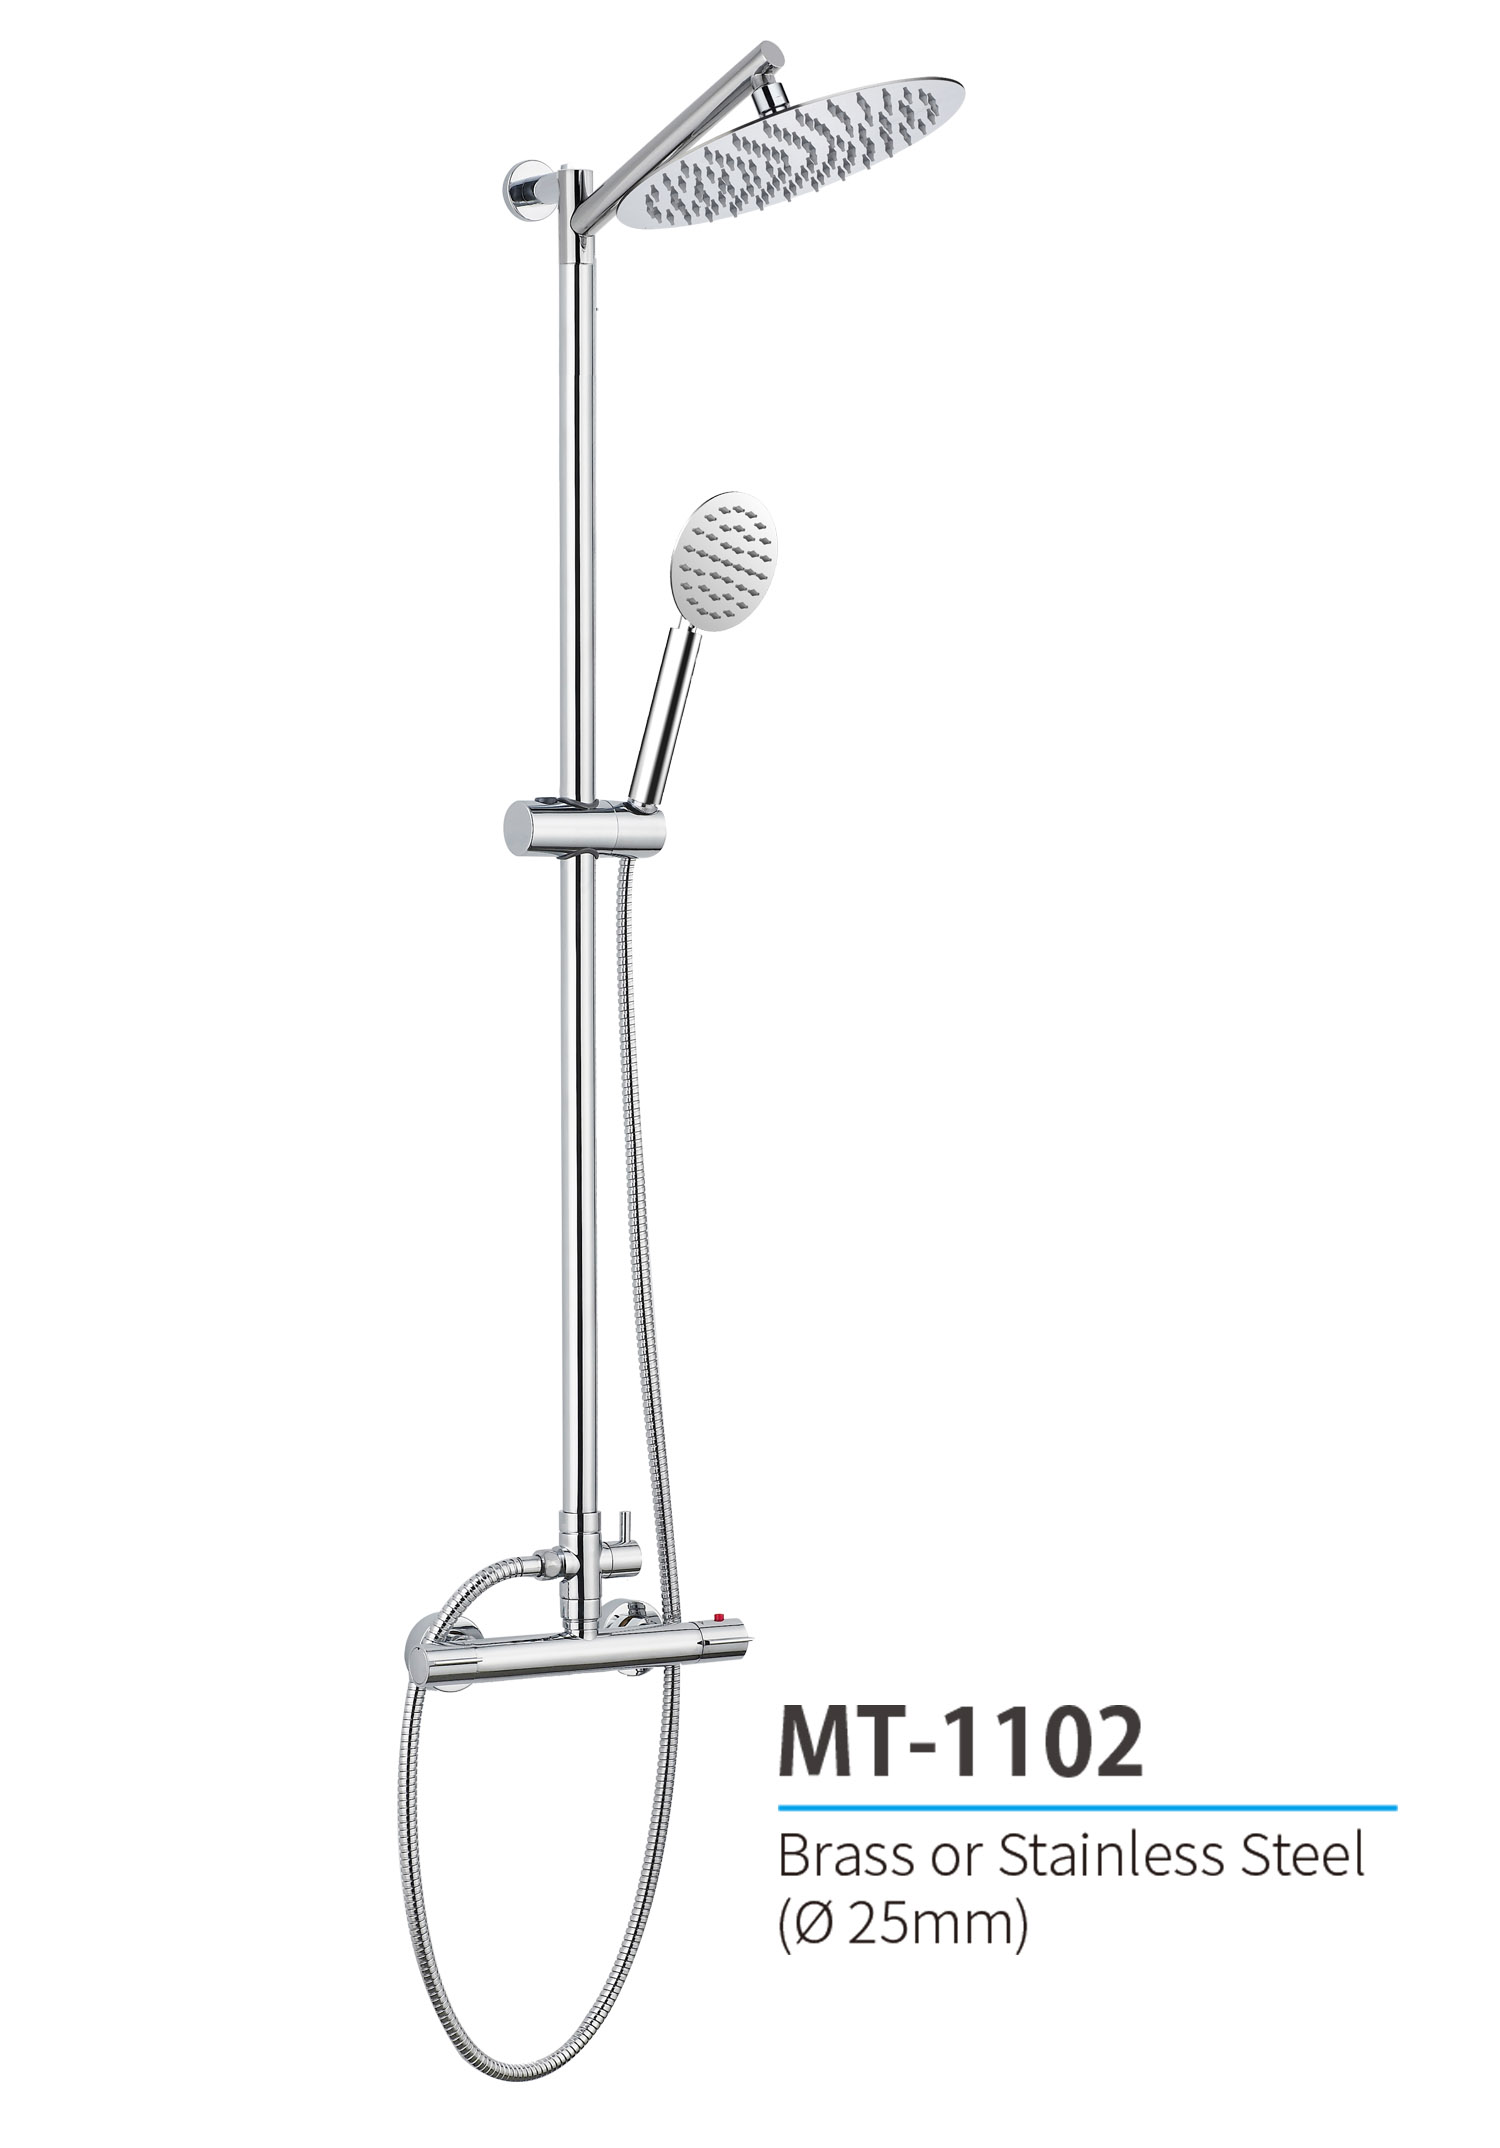 MT-1102